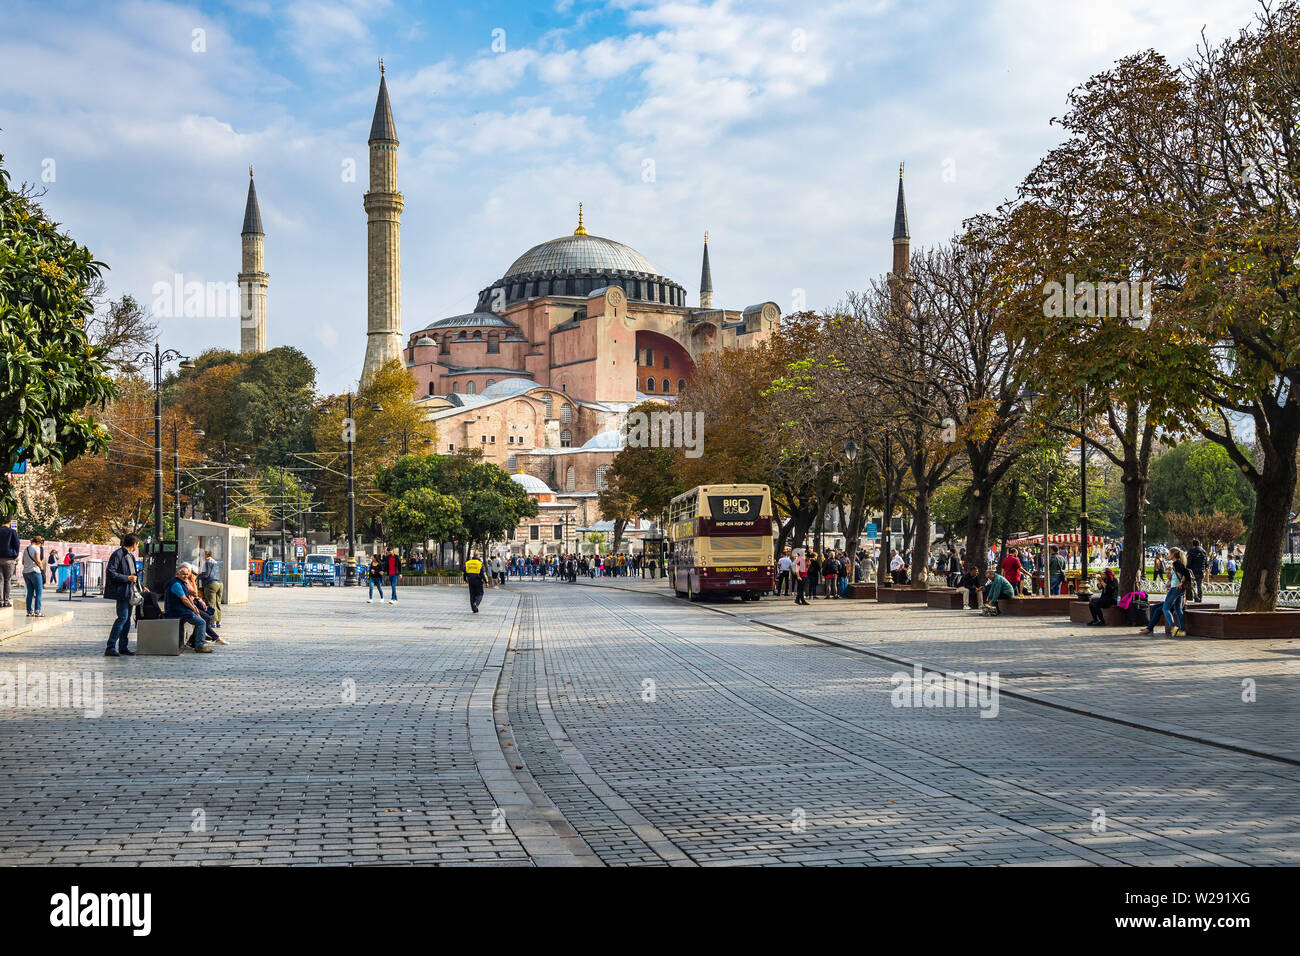 Sainte-sophie est l'un des plus célèbre monument d'Istanbul, situé dans le quartier de Sultanahmet, Turquie Banque D'Images